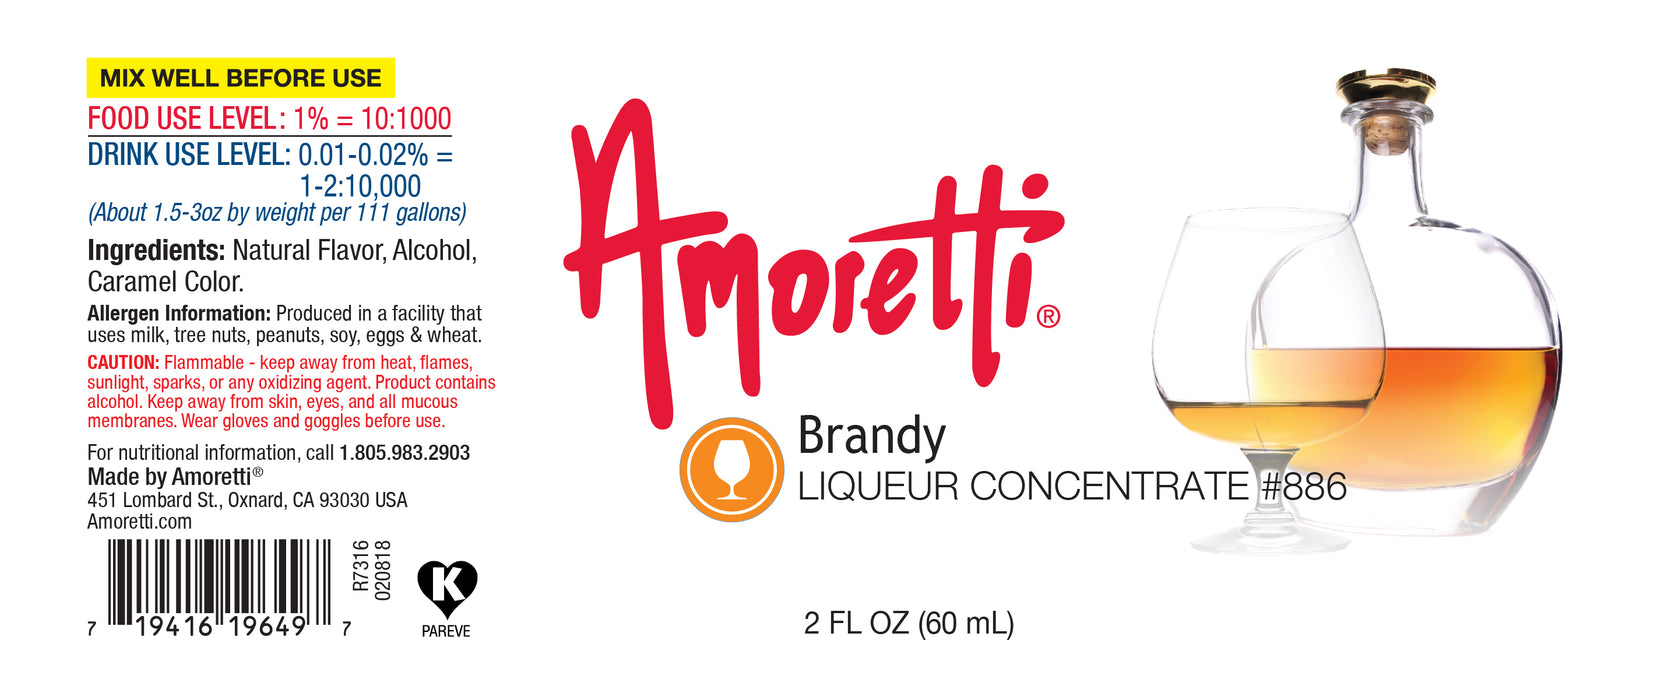 Brandy Liqueur Concentrate